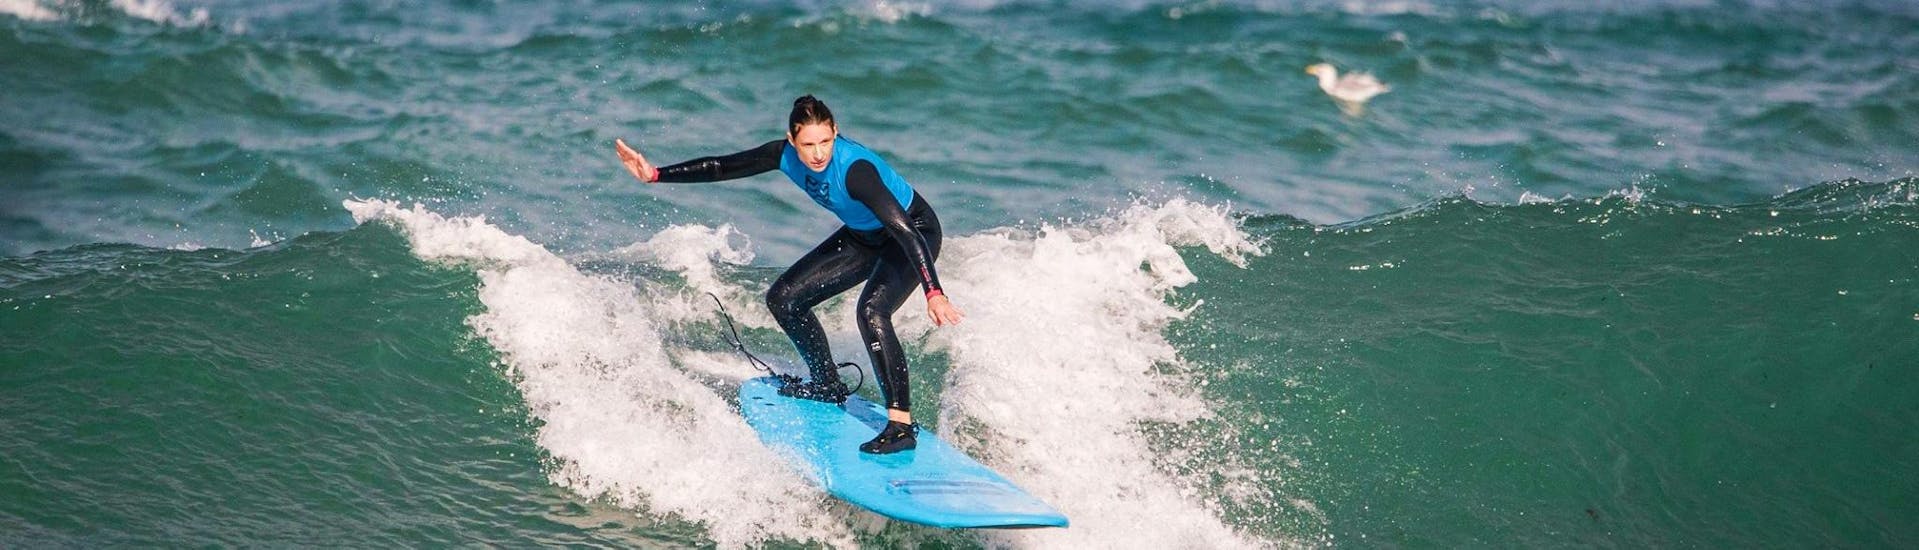 Cours de surf à Peniche (dès 2 ans) pour Surfeurs confirmés avec Go4Surf Peniche.